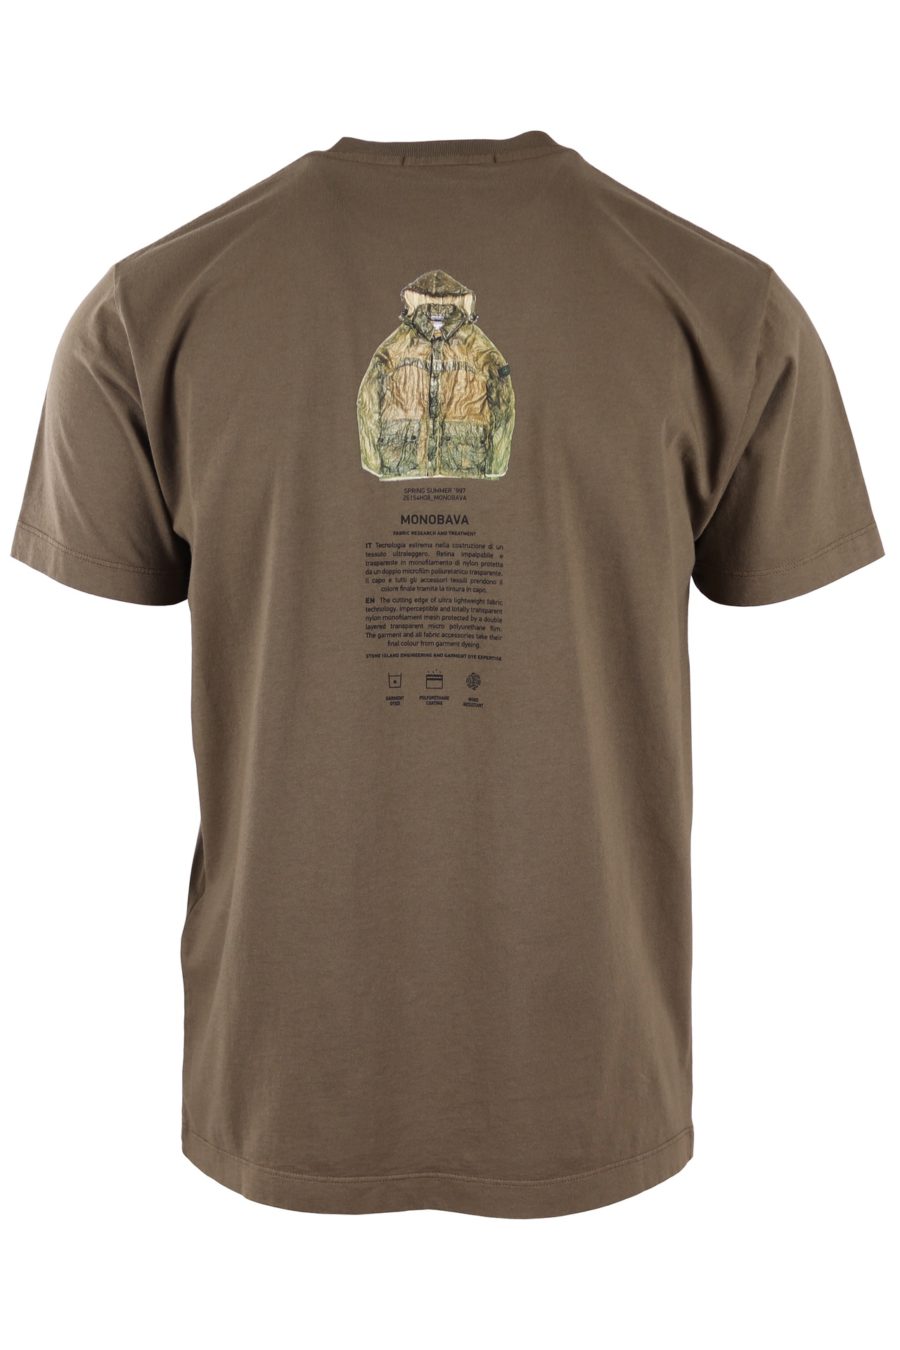 T-shirt Stone Island militärgrün mit Logo "archivio" - e479b4f2340d93a5d2b6d33e1772abdc36ff26da